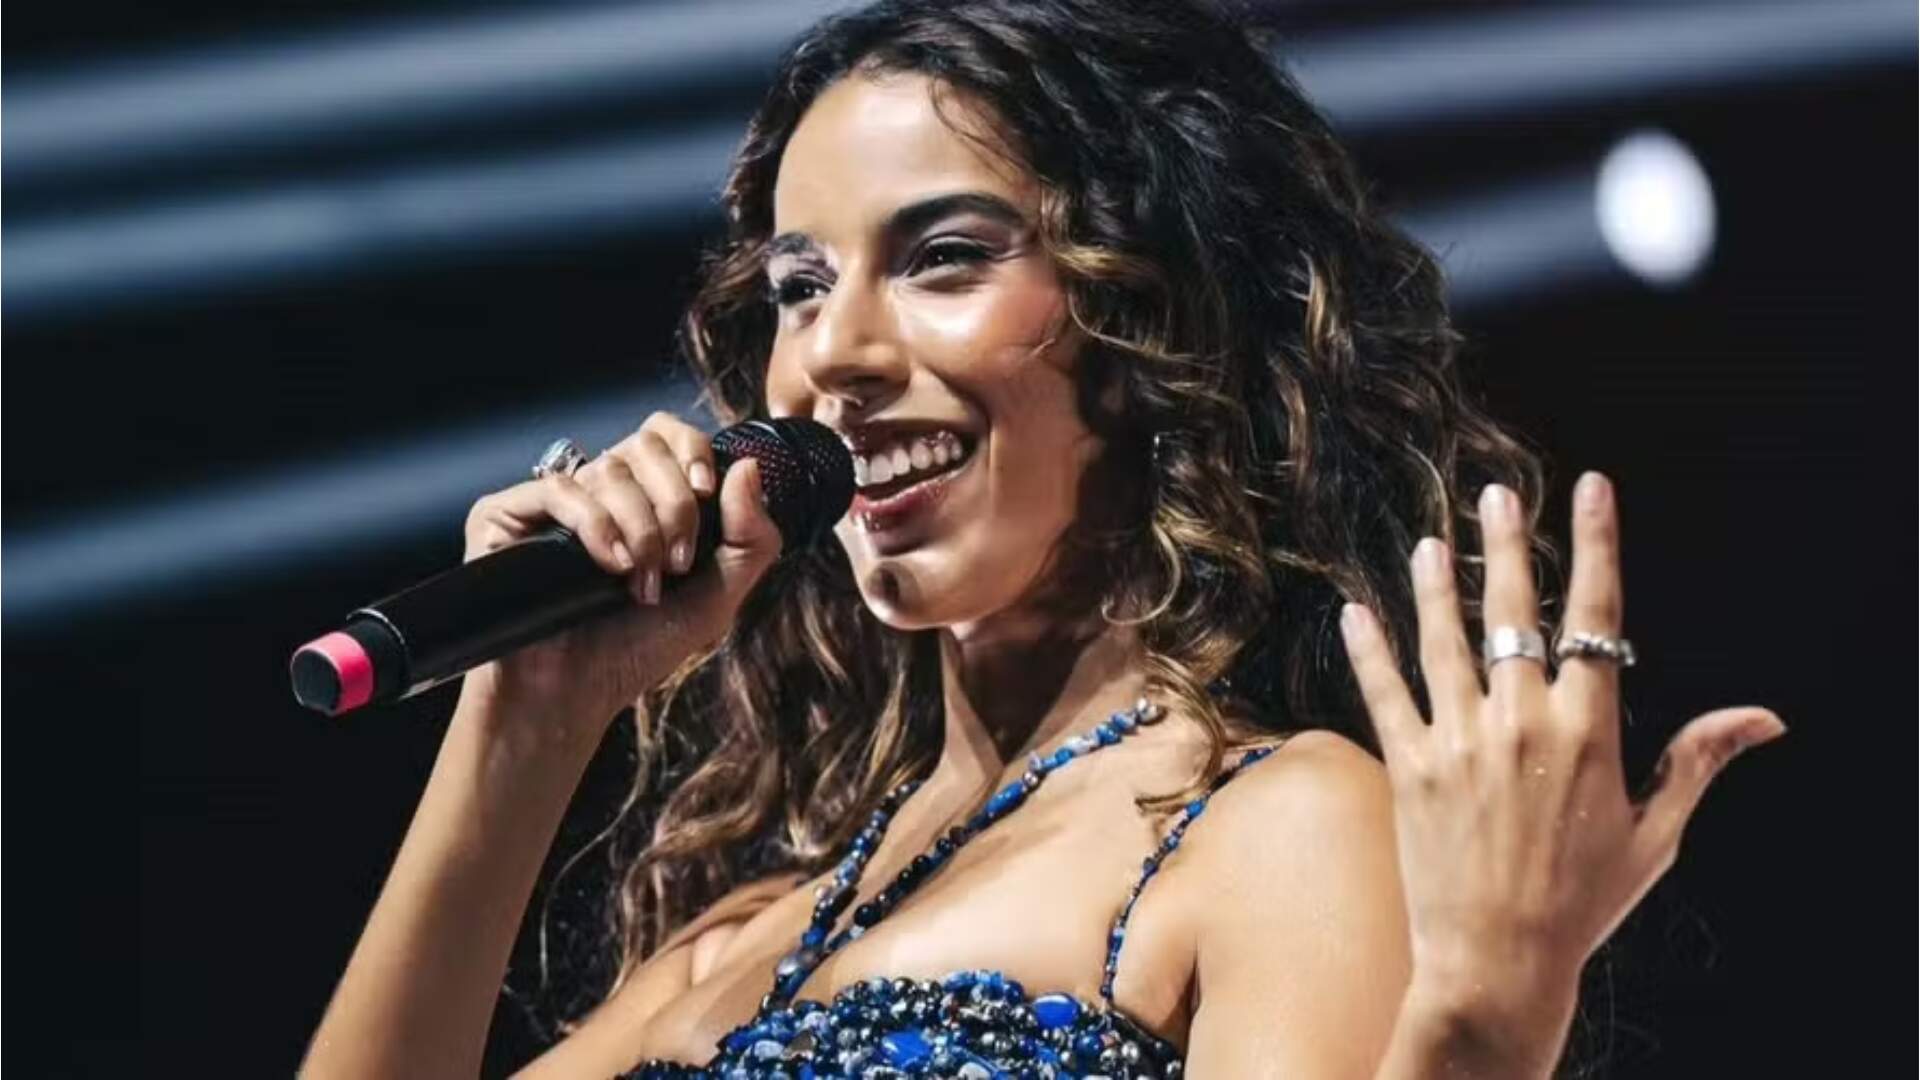 Marina Sena fala sobre polêmica envolvendo preferências sexuais mas faz ressalva: “Não é um passaporte para a minha vida pessoal’ - Metropolitana FM